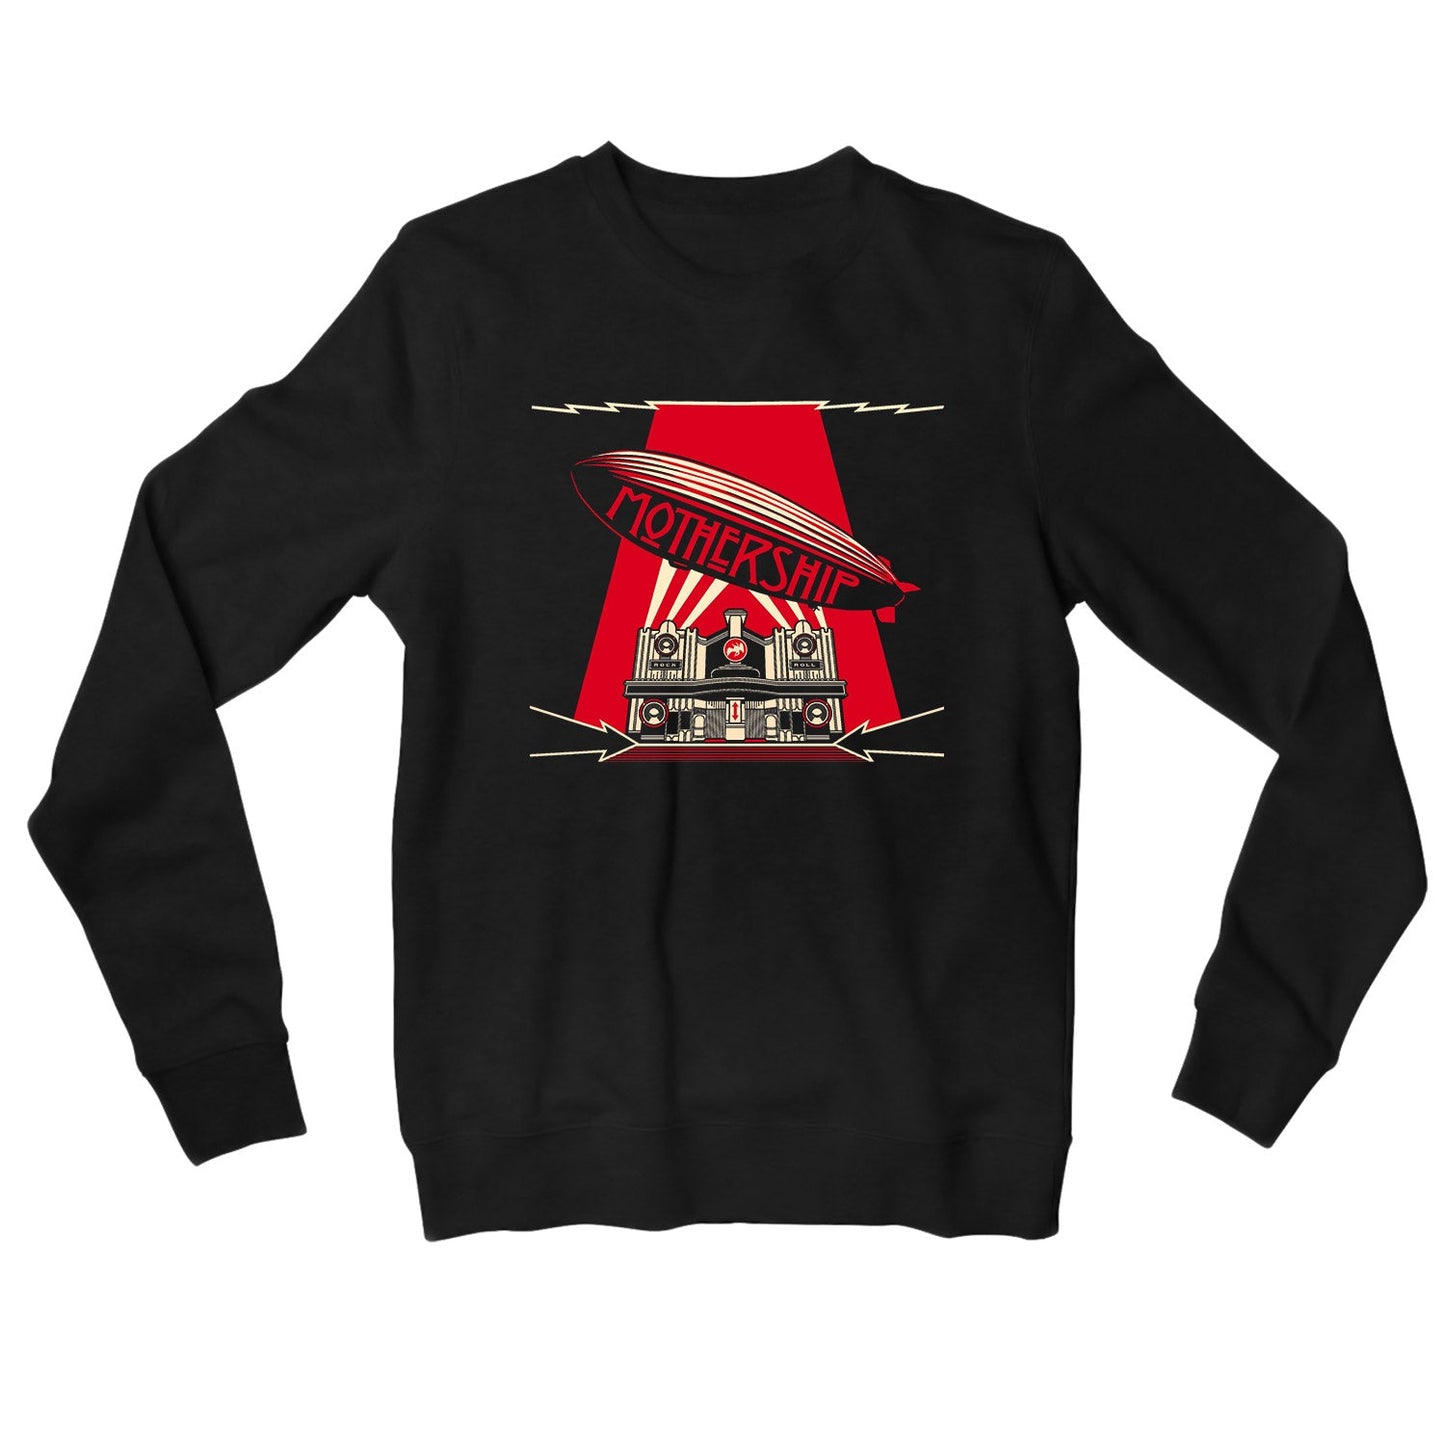 Led Zeppelin Sweatshirt - Mothership Sweatshirt The Banyan Tee TBT